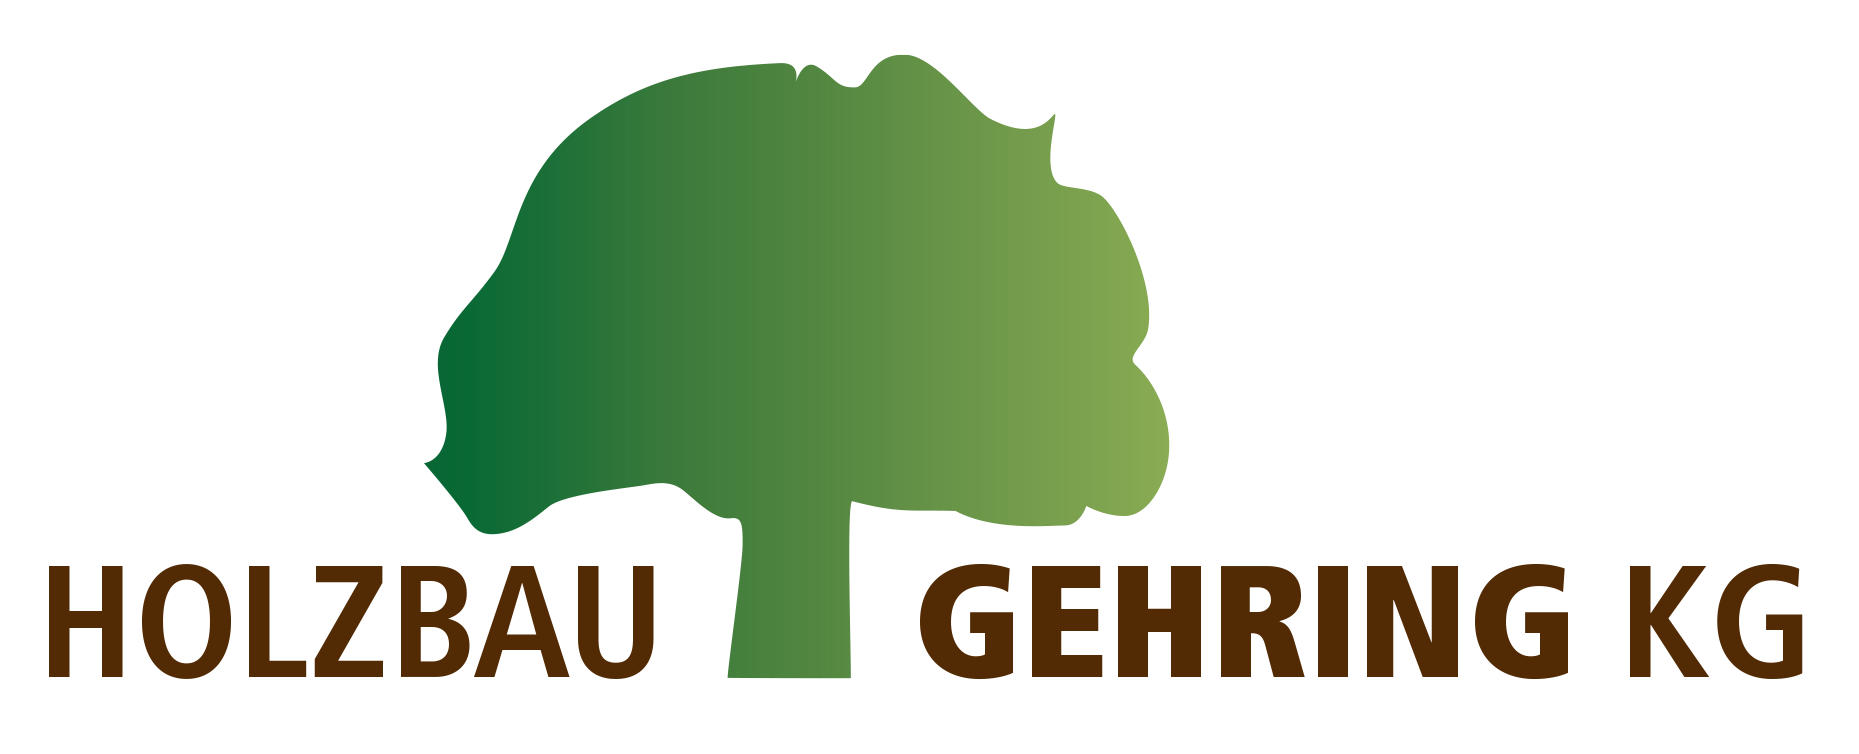 Holzbau Gehring KG